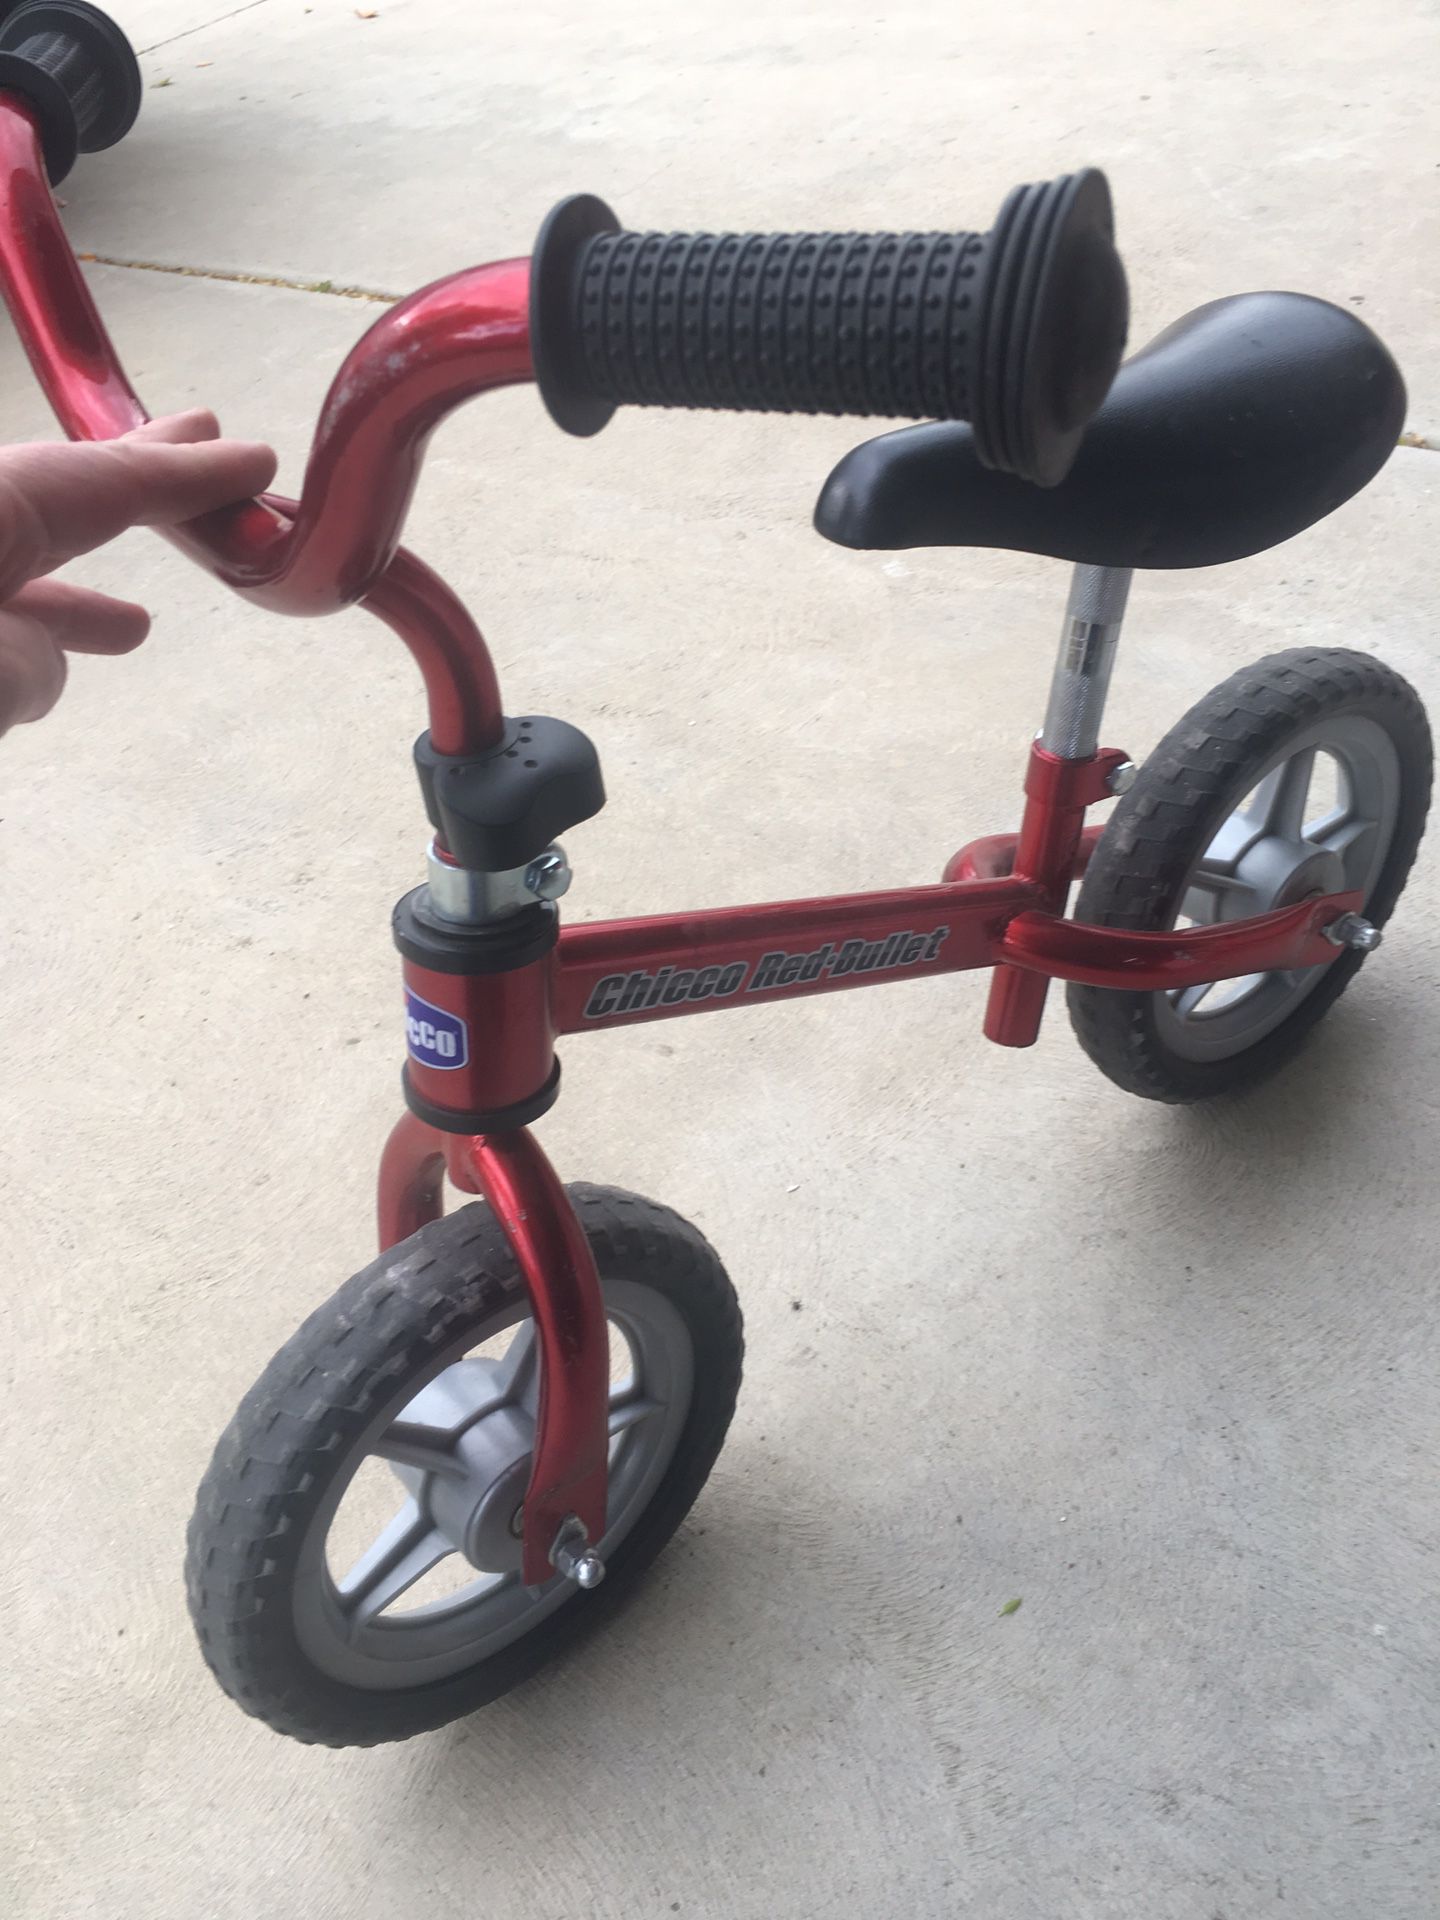 Kids balance bike